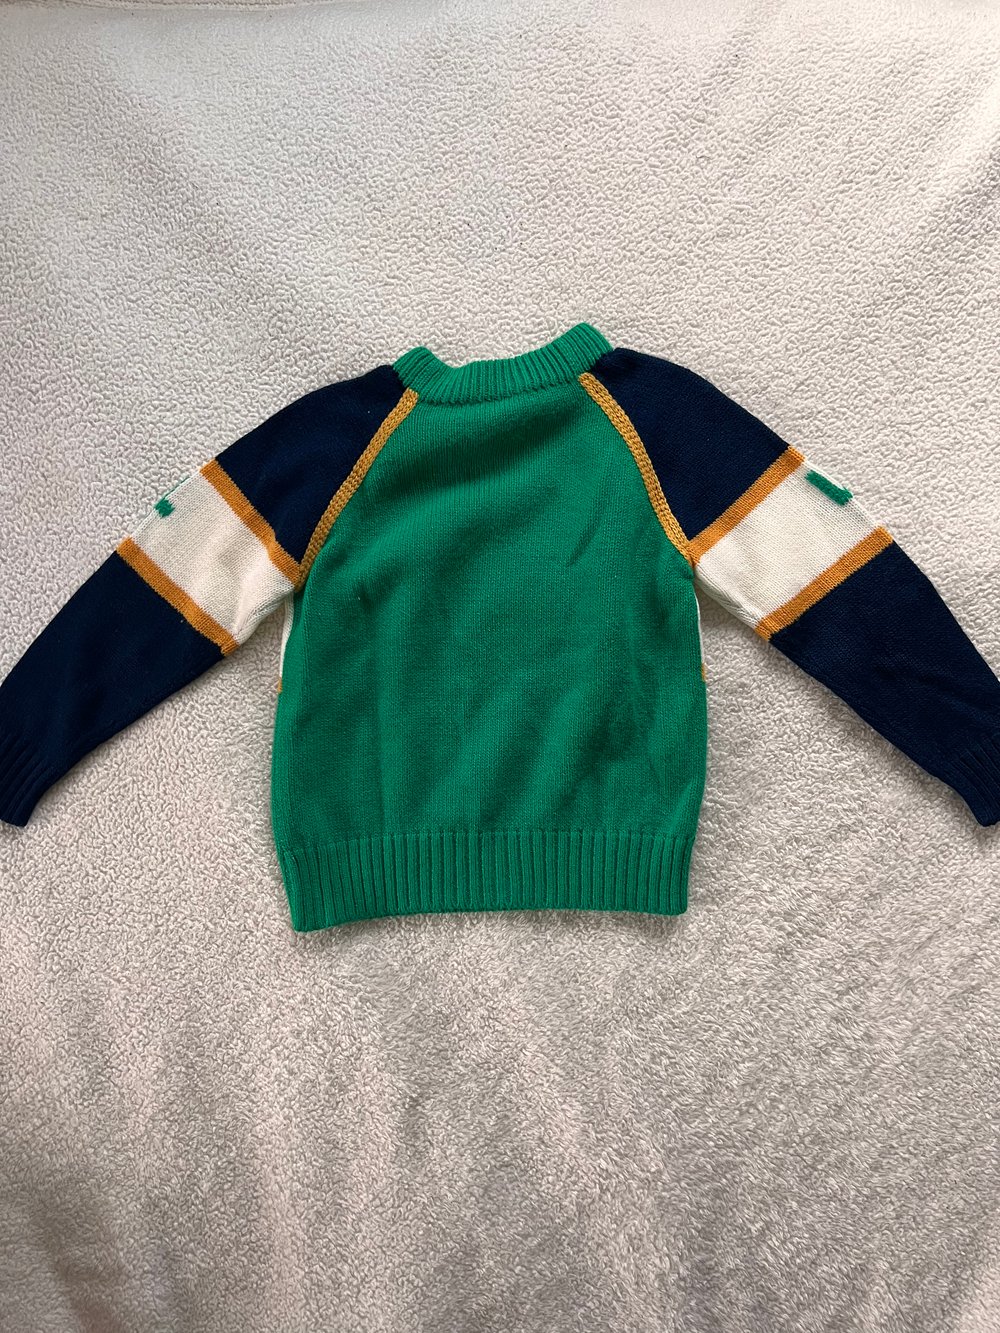 Vintage Kid’s Hockey Sweater